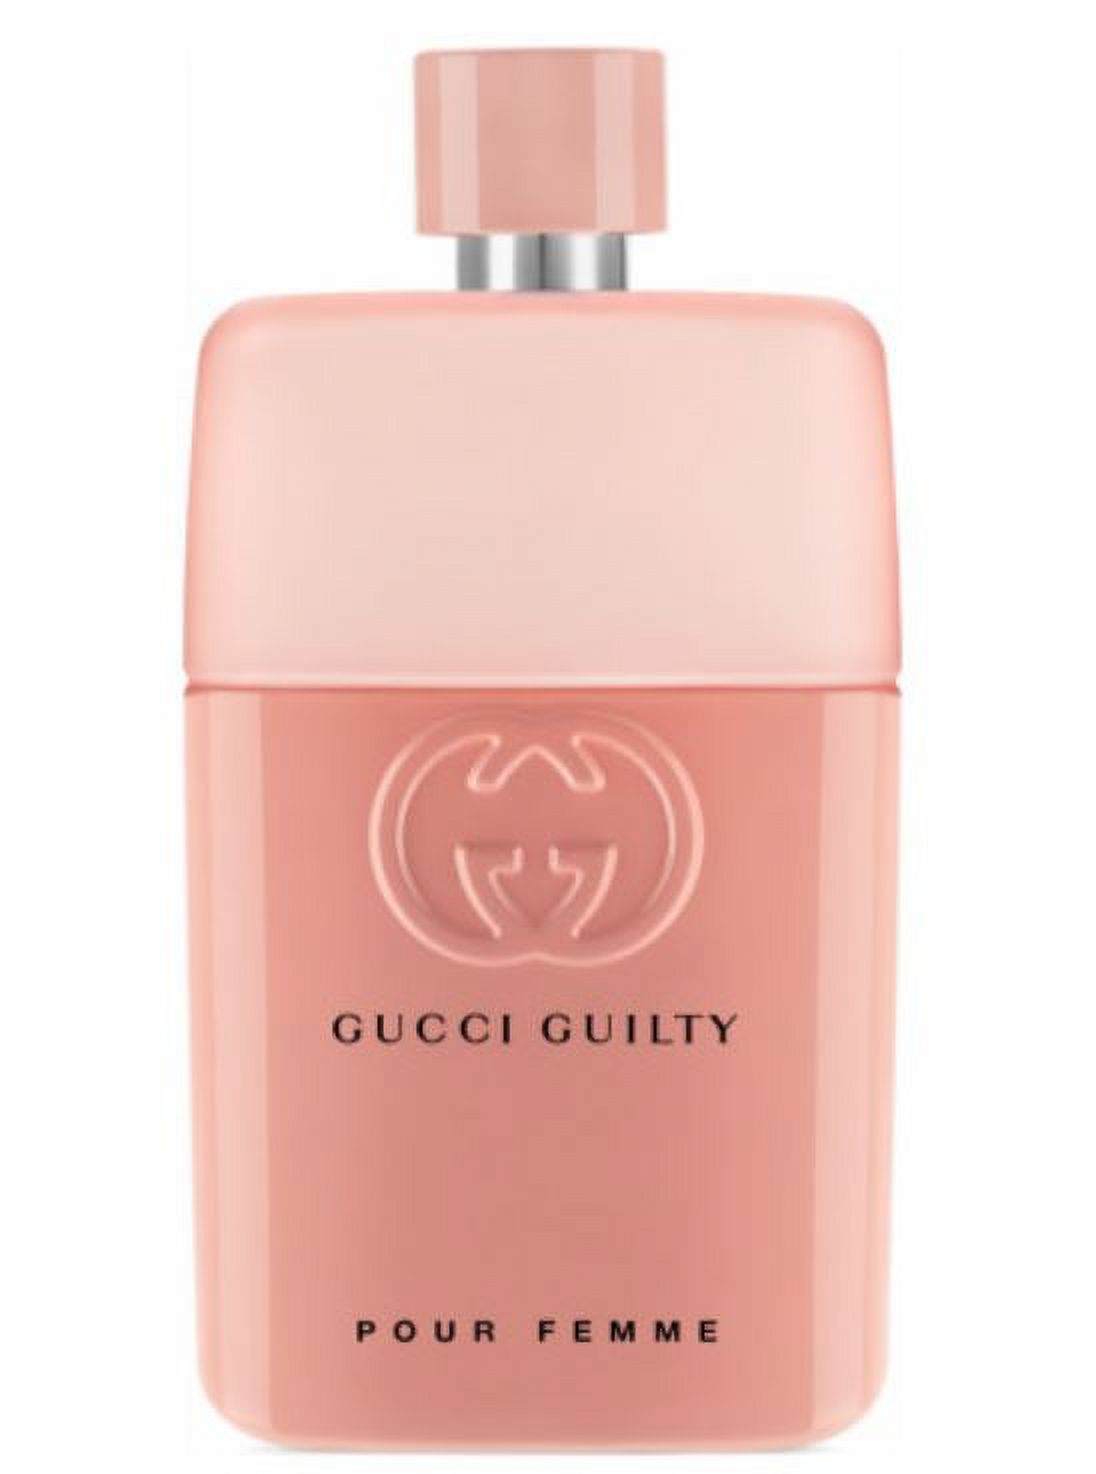 Gucci Guilty Love Edition Pour Femme Eau de Parfum, Perfume for Women, 3 Oz - image 1 of 3